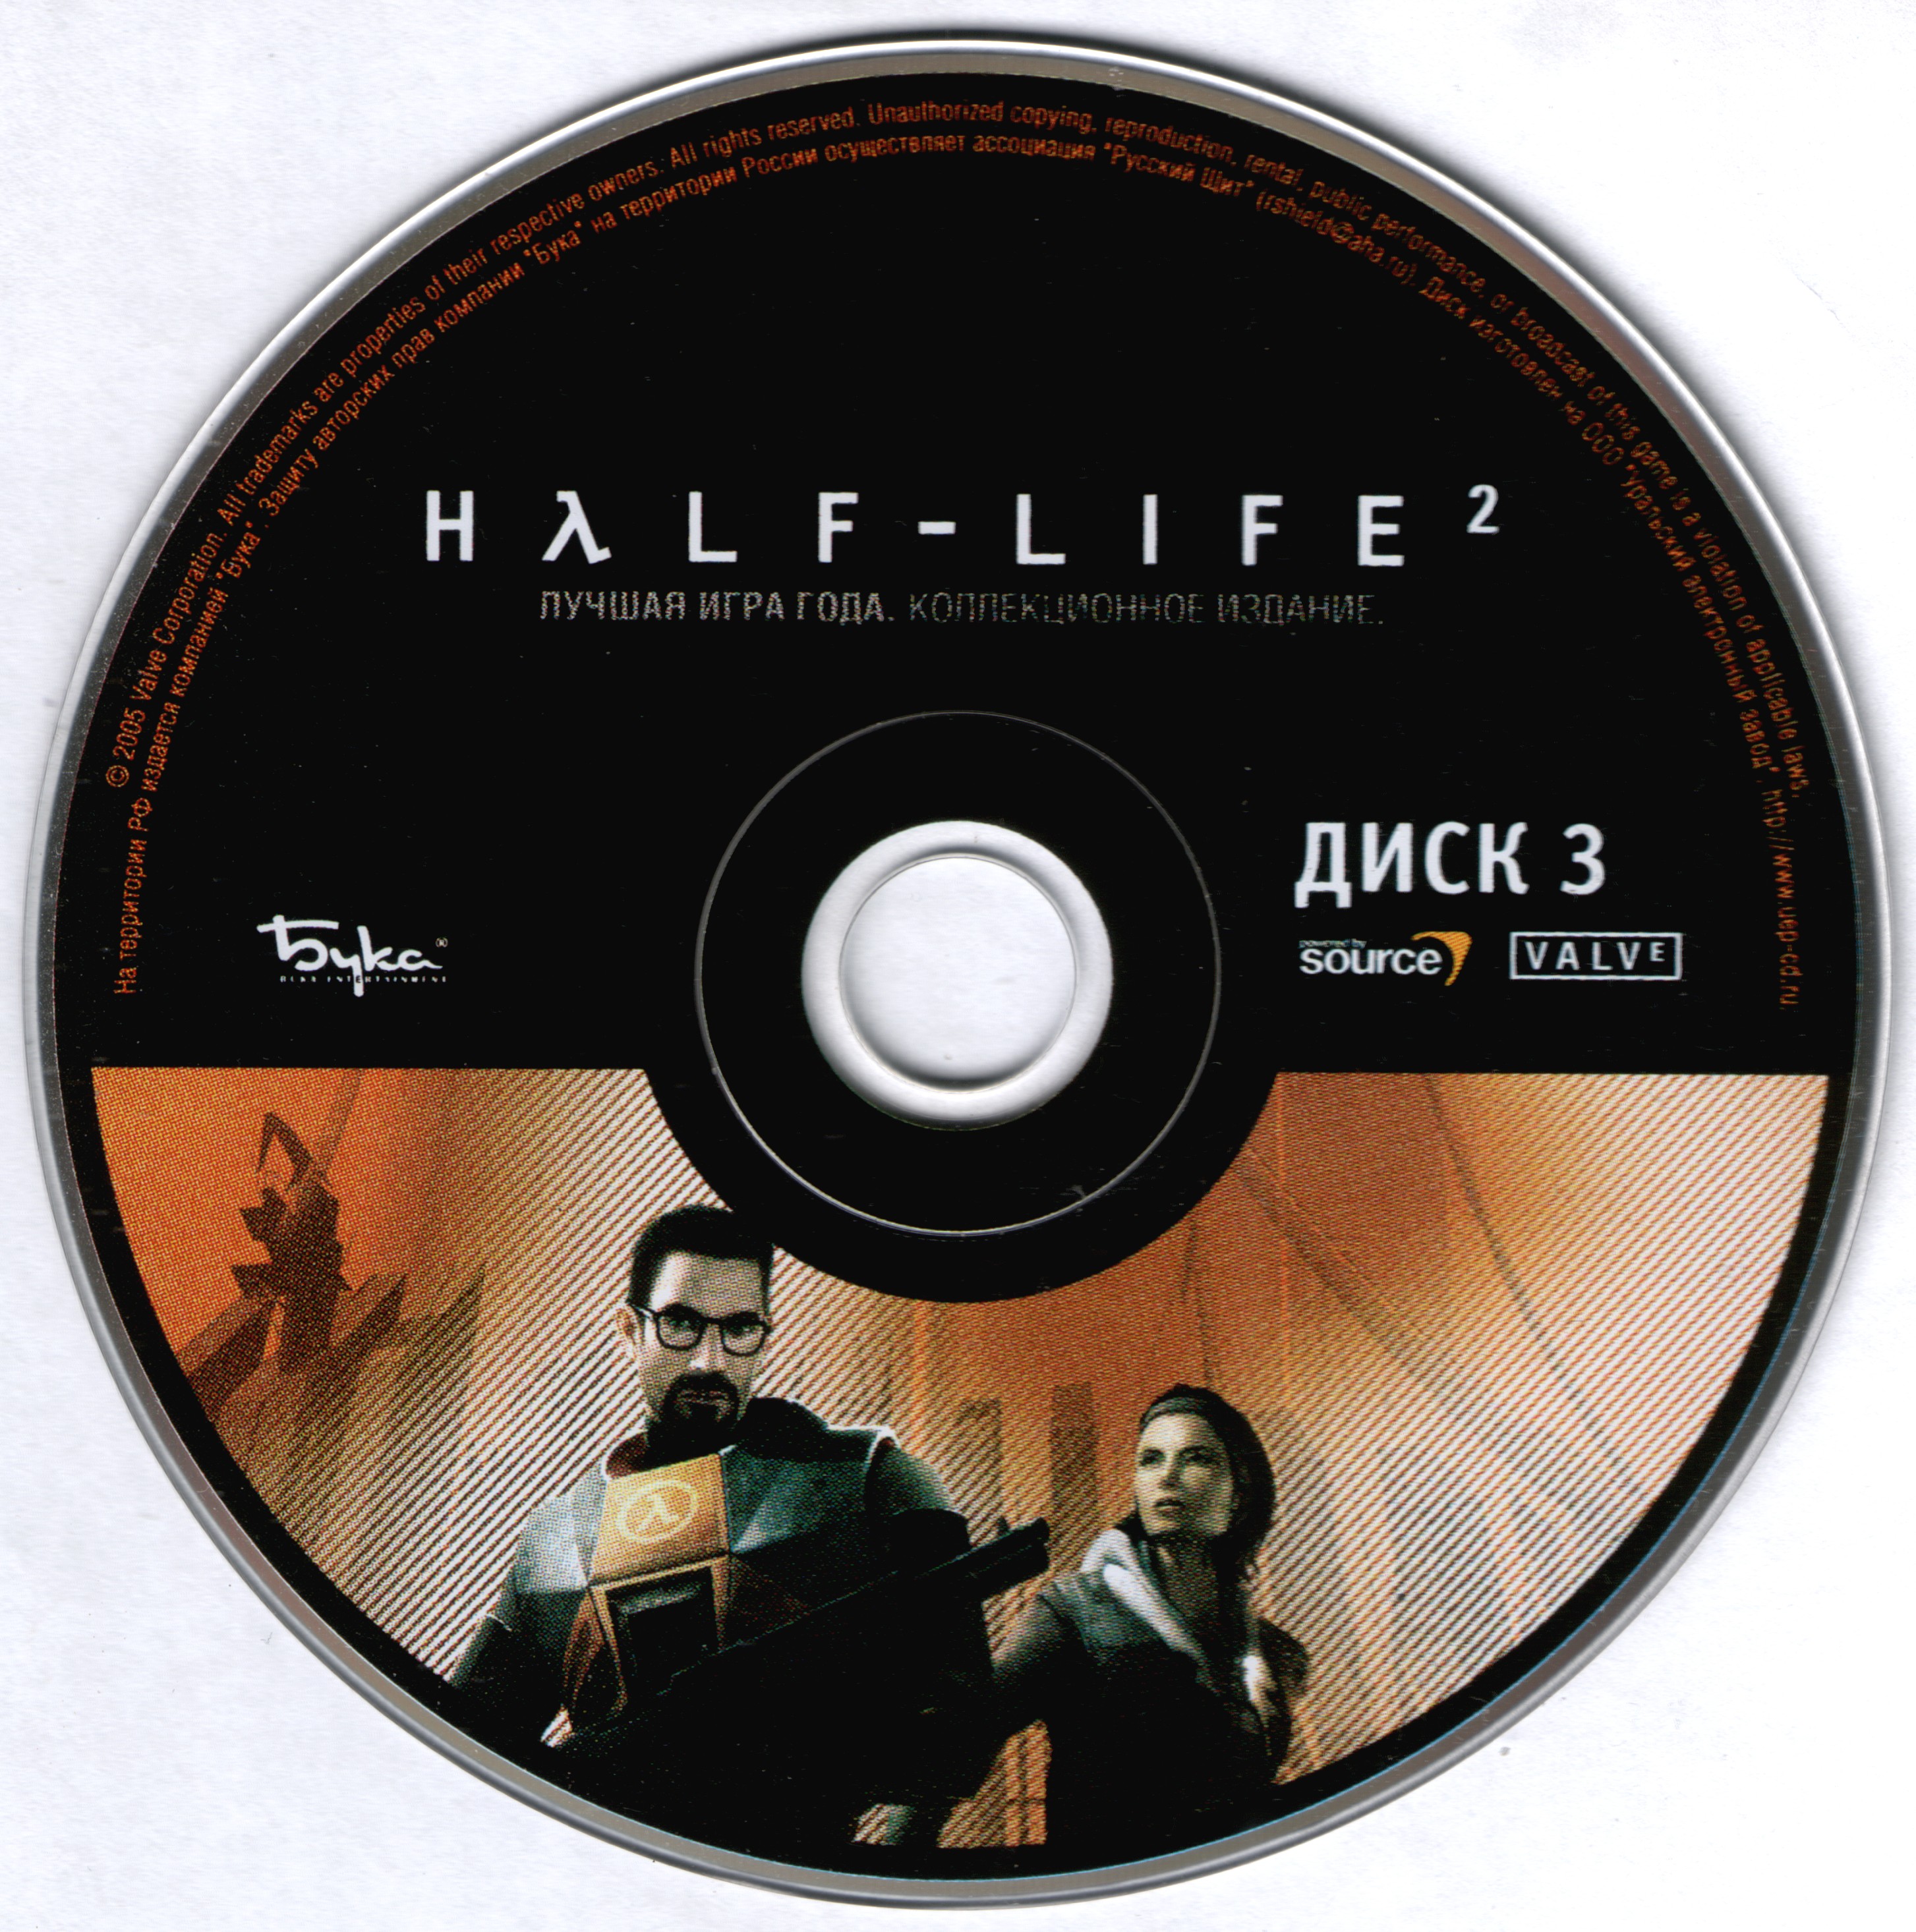 что это такое the cd key displayed on the half life cd case фото 19